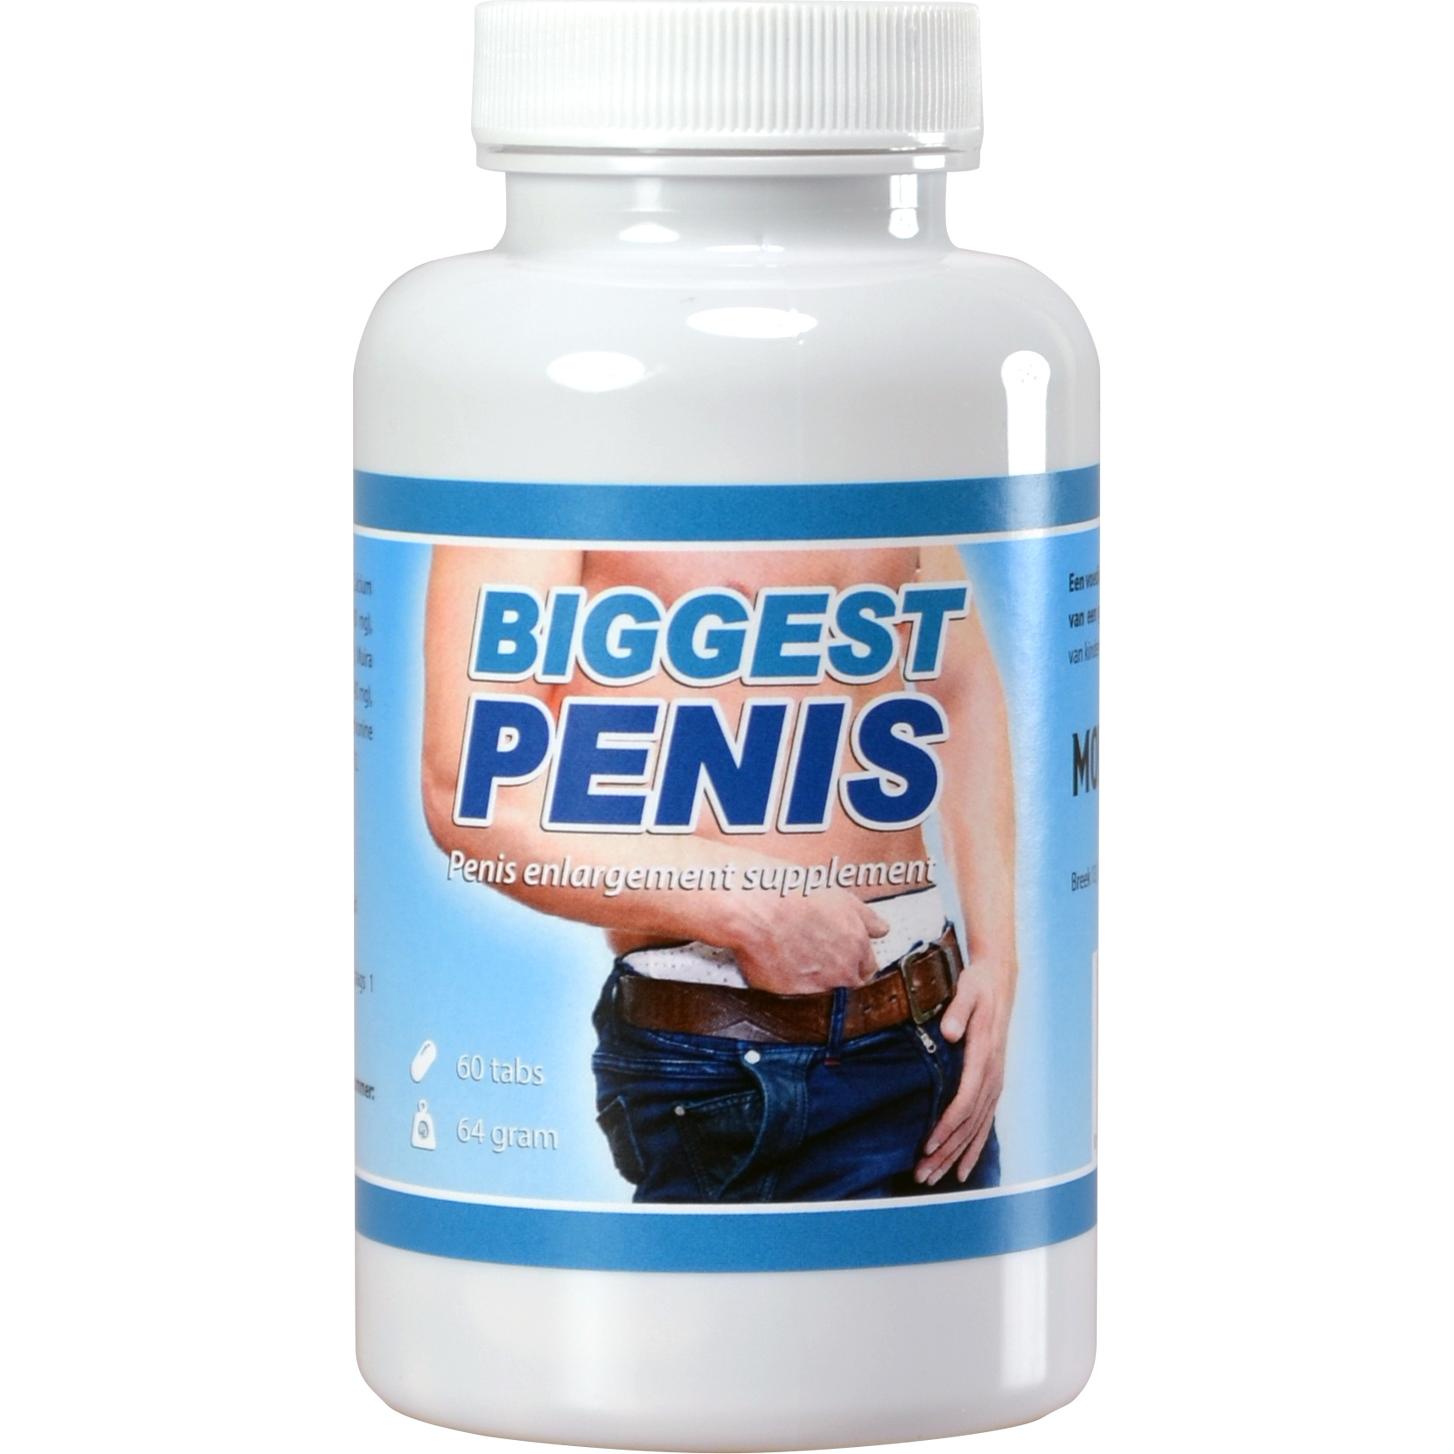 care penisuri sunt considerate mari crema pt marirea penisului